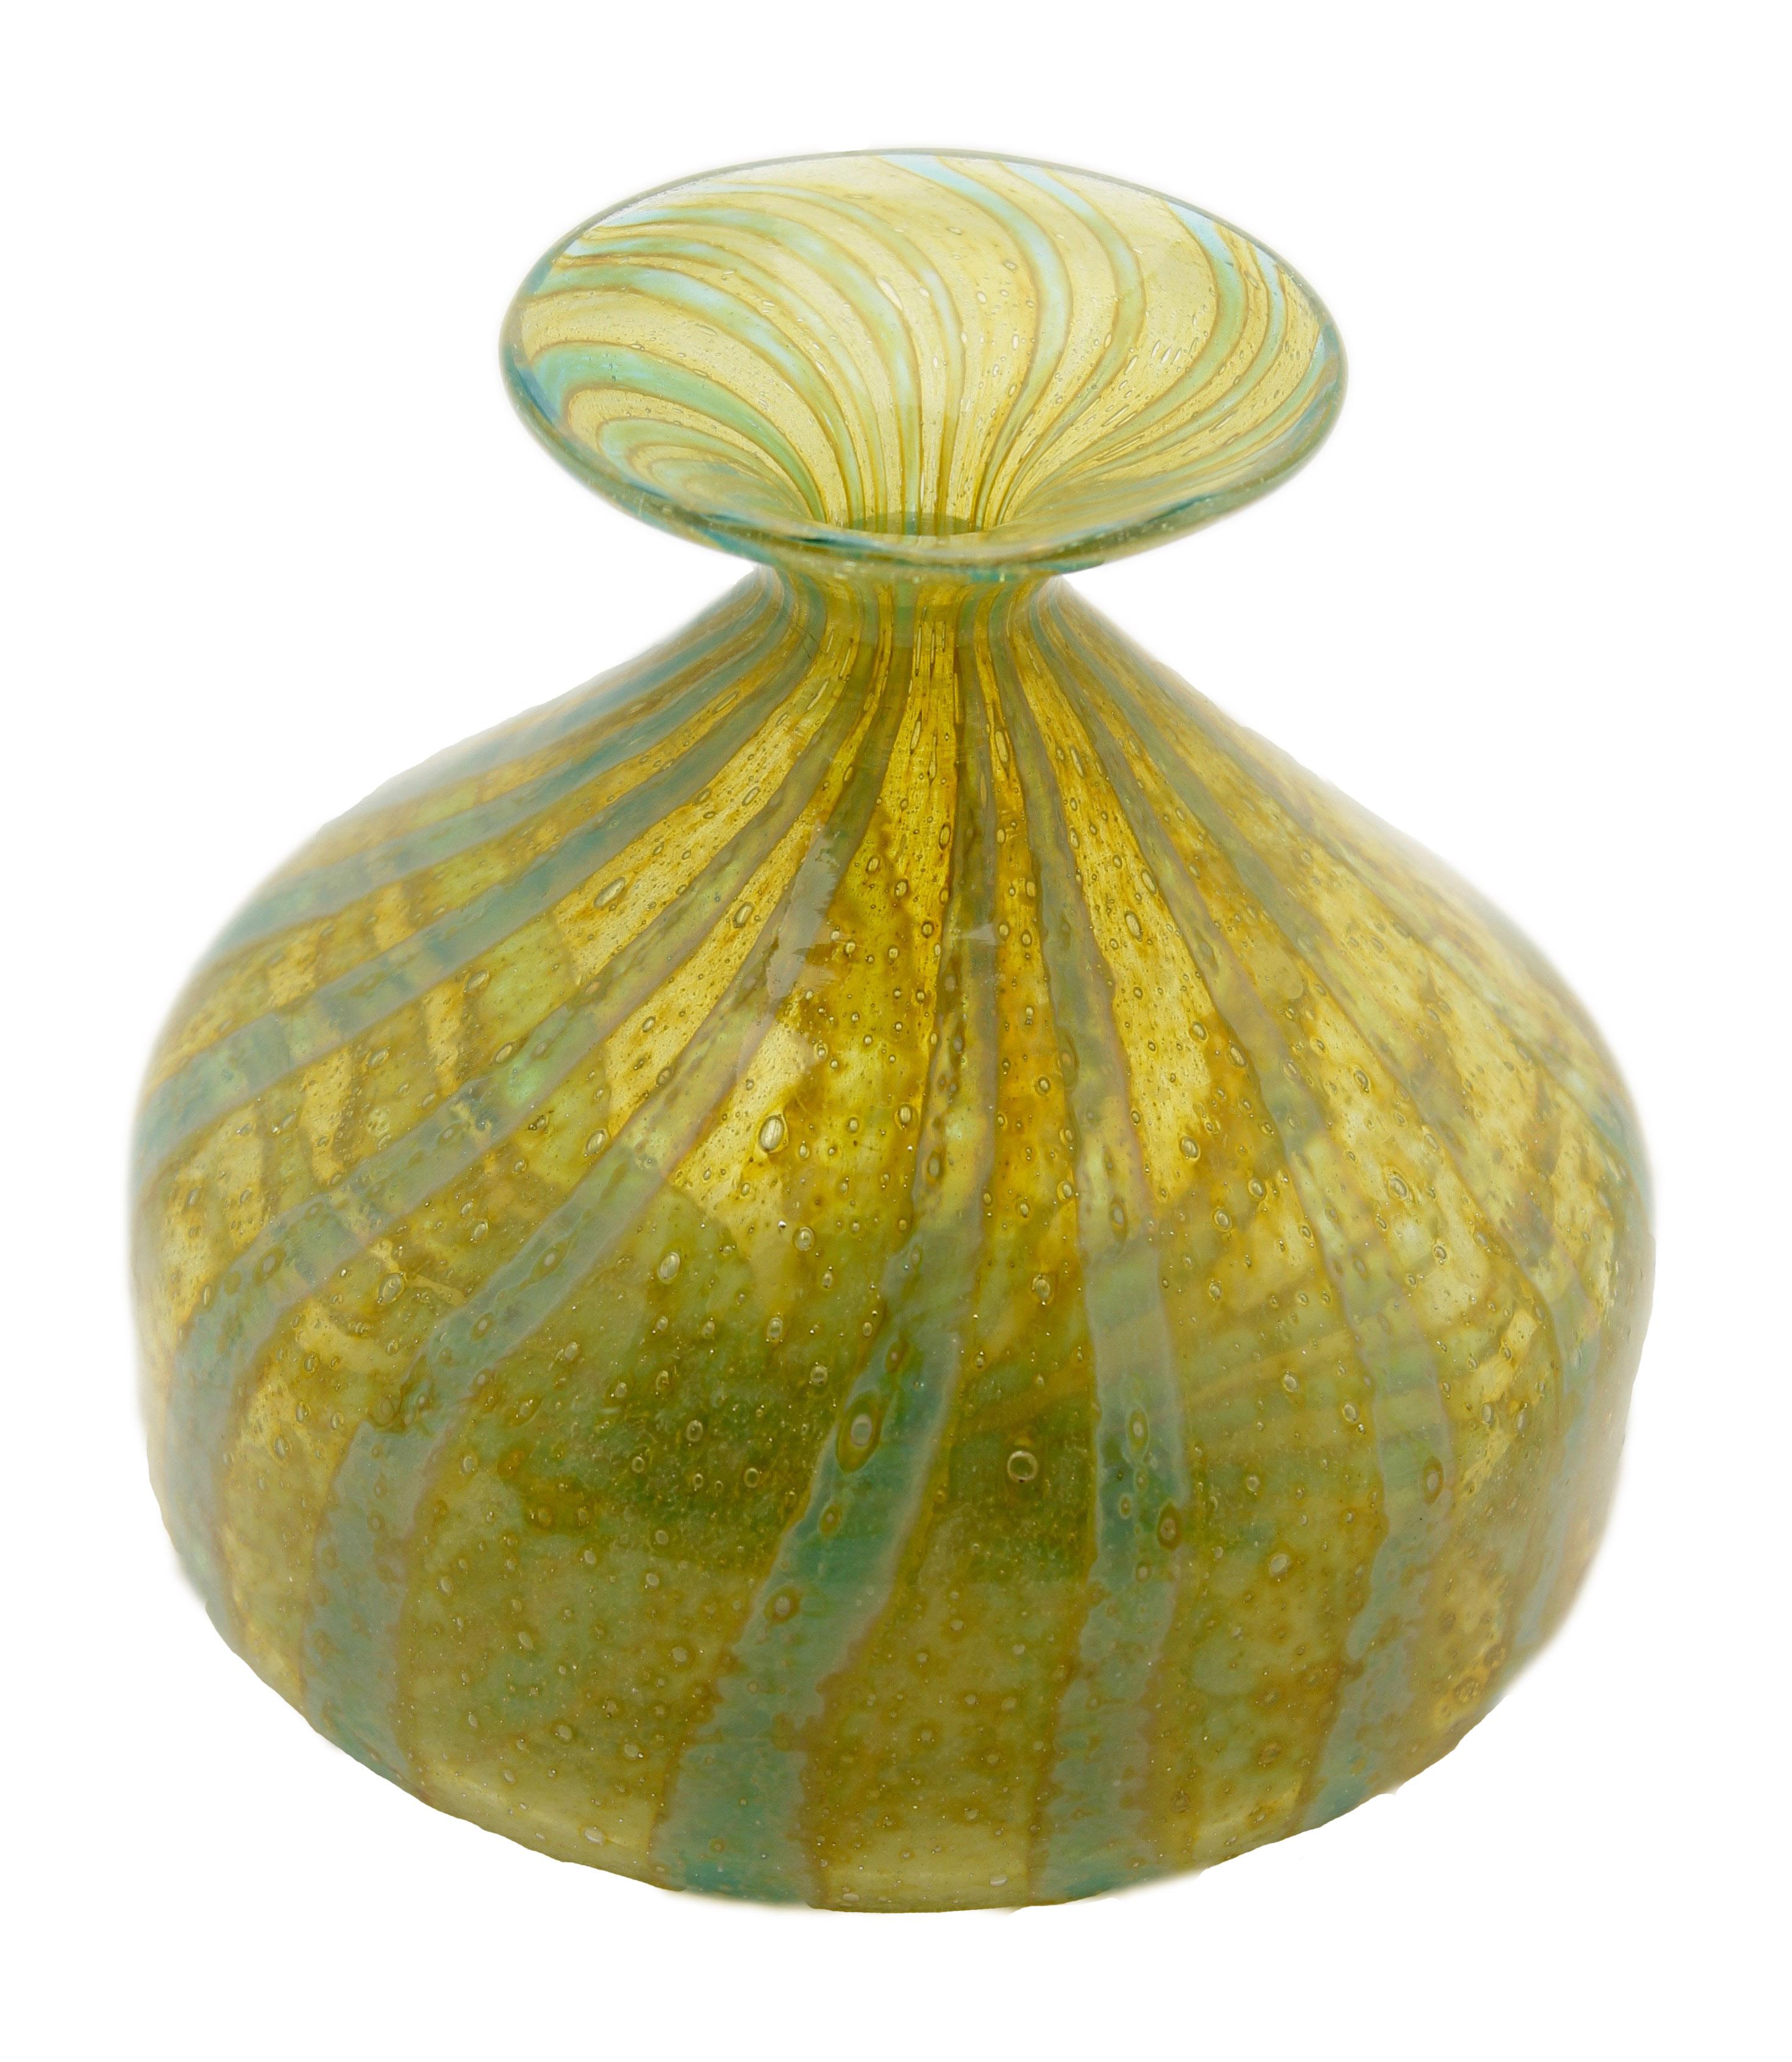 Vase soliflore de Mdina soufflé à la bouche à large bord, (1970-1975).
Il présente des couleurs typiquement méditerranéennes, des fils de vert de mer tourbillonnant sur une base de verre jaune-vert avec des inclusions de bulles.
Fabriqué sur l'île